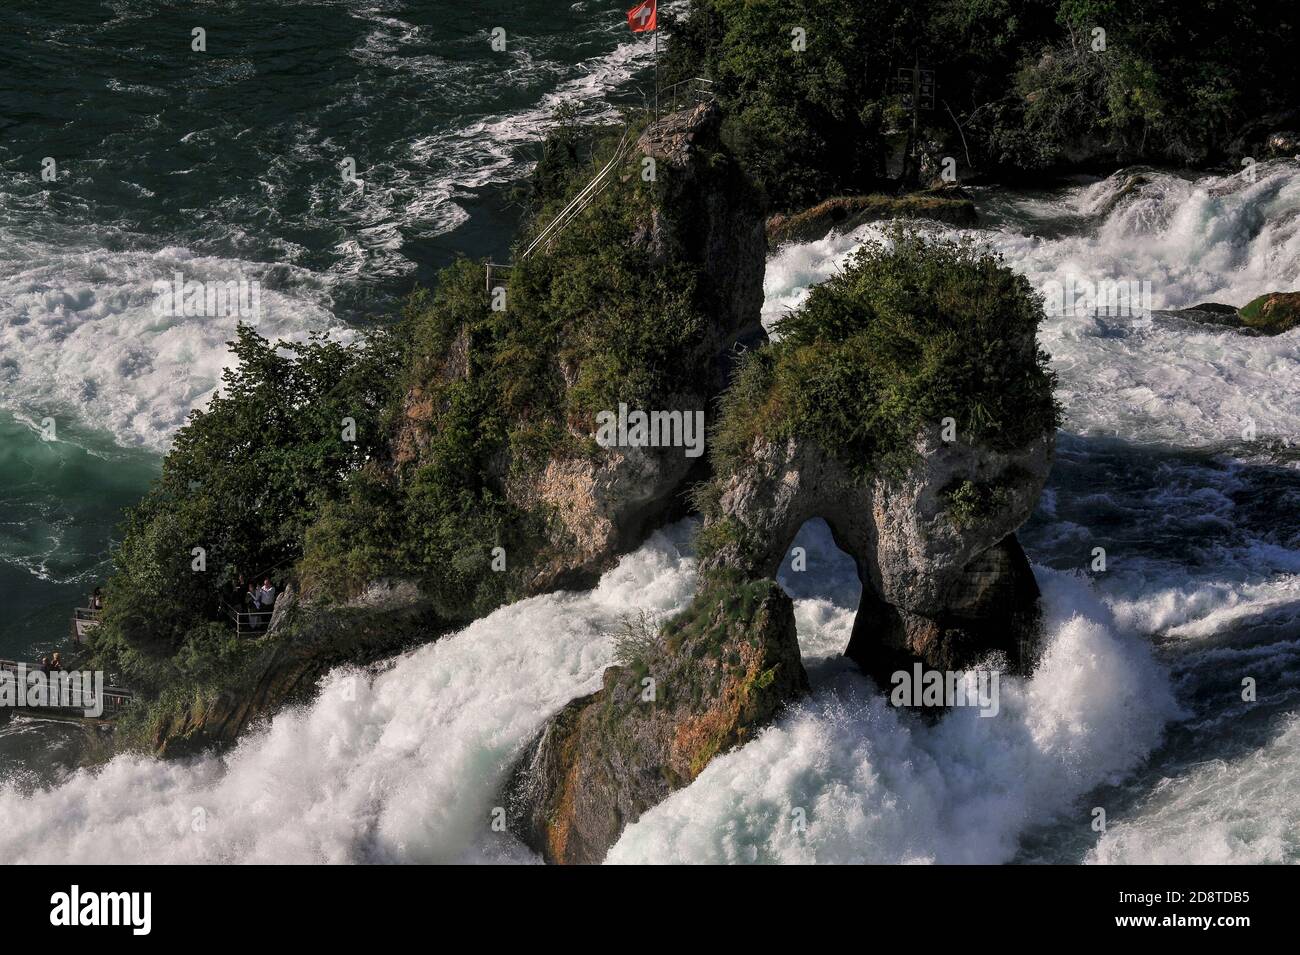 Die Schweizer Flagge fliegt vom Aussichtspunkt auf den Rheinfallfelsen, einem felsigen Felsen, der auf beiden Seiten vom donnernden Rheinfall, dem Rheinfall bei Schaffhausen, der Nordschweiz, dem größten und mächtigsten Wasserfall Europas, passiert wird. Der Rheinfallfelsen, der nur mit dem Boot erreicht wurde, war Teil einer harten Kalksteinklippe, die den ehemaligen Kanal des hoch- oder Oberrheins flankiert. Trotz Erosion hat es Sommerwasserströmungen mit durchschnittlich 600 Kubikmeter (21,000 Kubikfuß) pro Sekunde standgehalten. Der Fluss stürzt etwa 23 m (75 ft), bevor er sich sediger in Richtung Deutschland entwickelt. Stockfoto